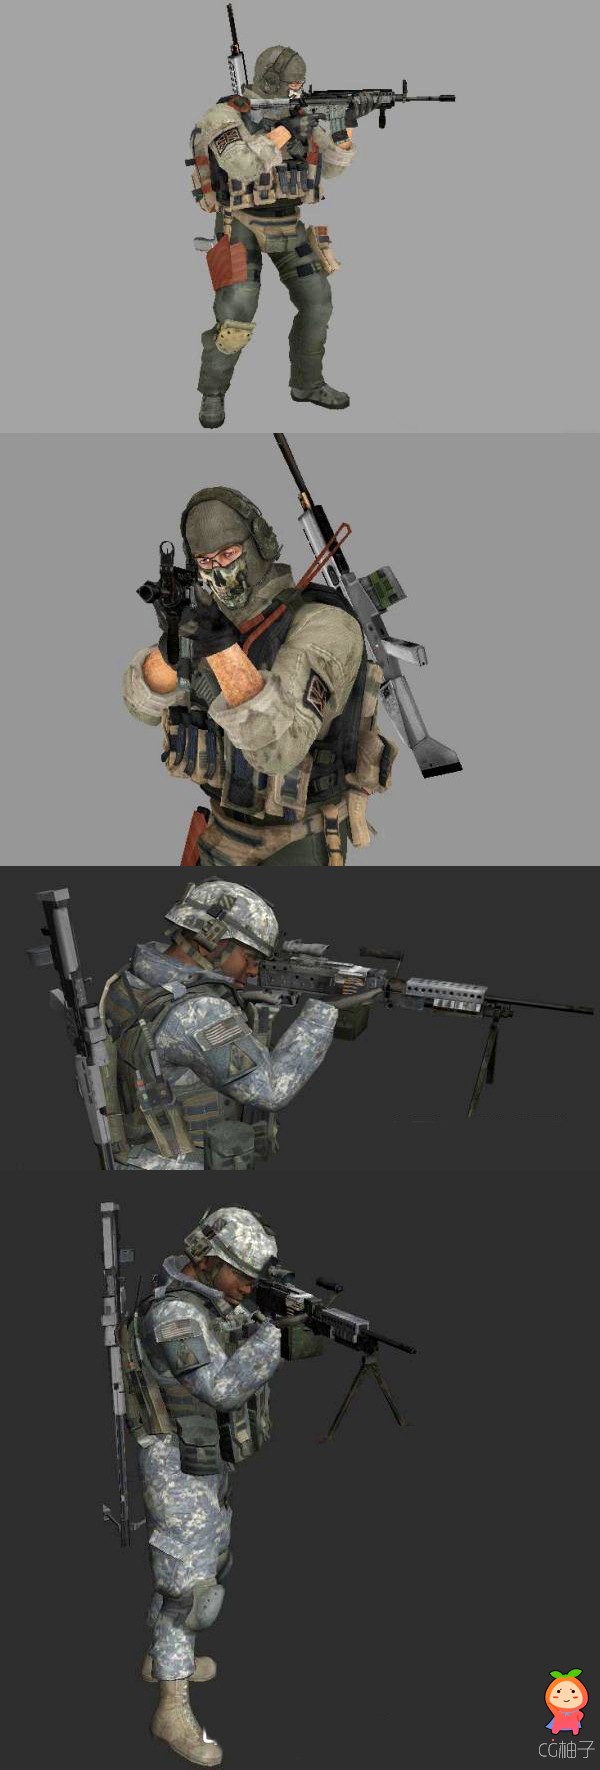 《使命召唤6》中两位士兵3D模型，军官套装3D角色模型